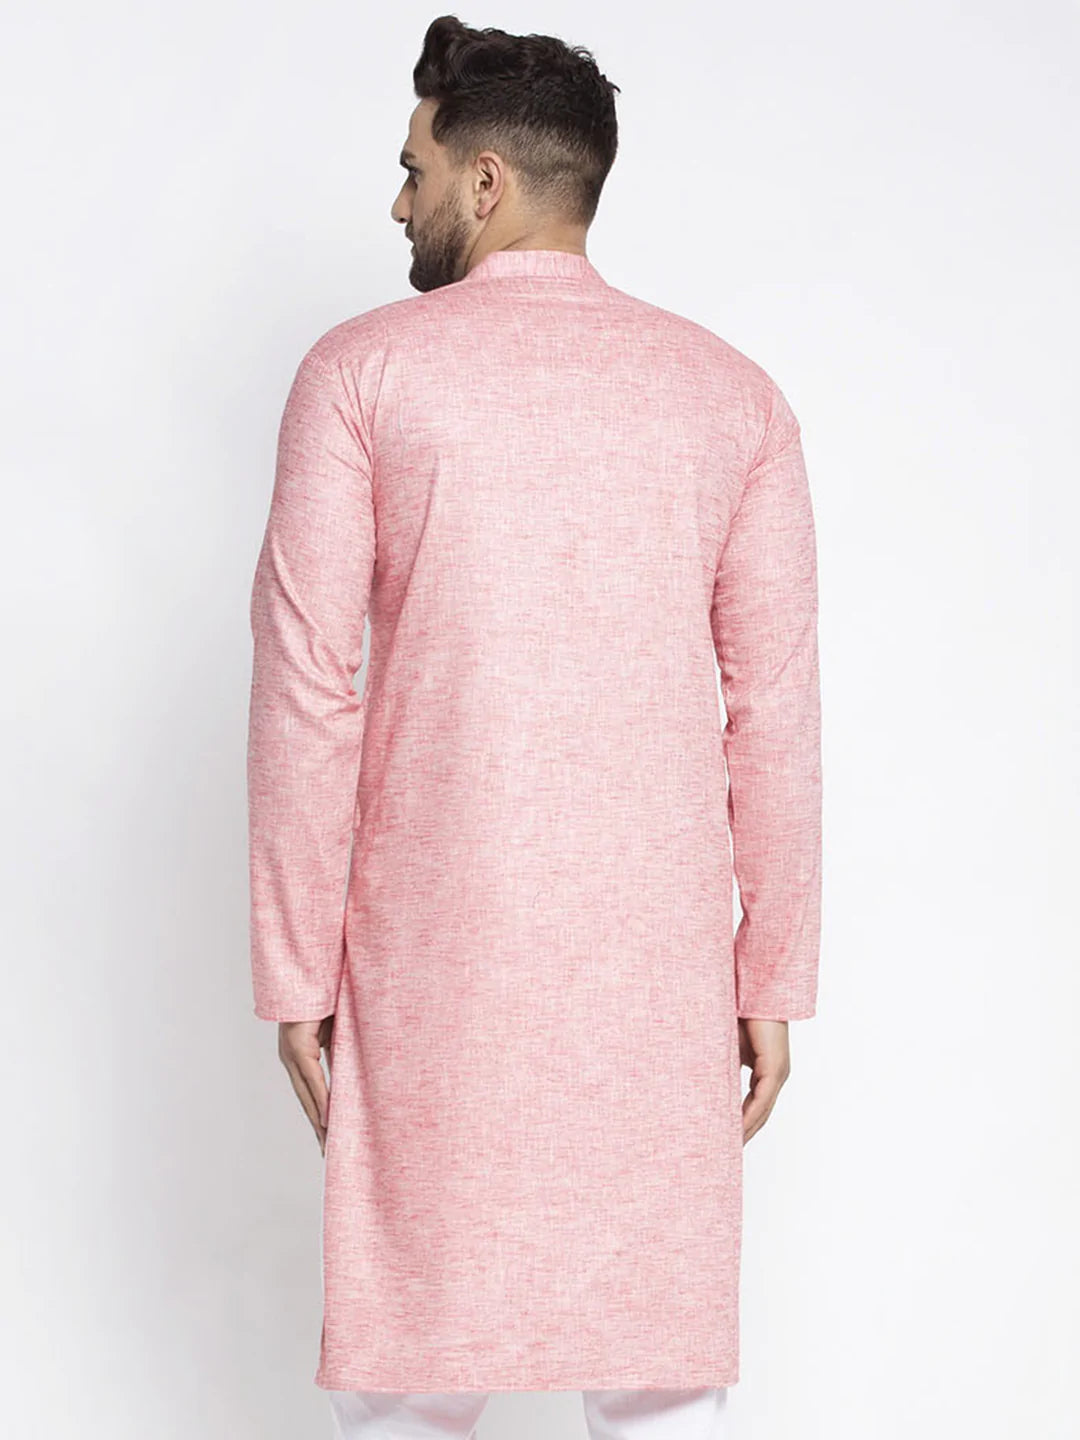 Jompers Men Pink & White Self Design Kurta Only ( KO 638 Coral )